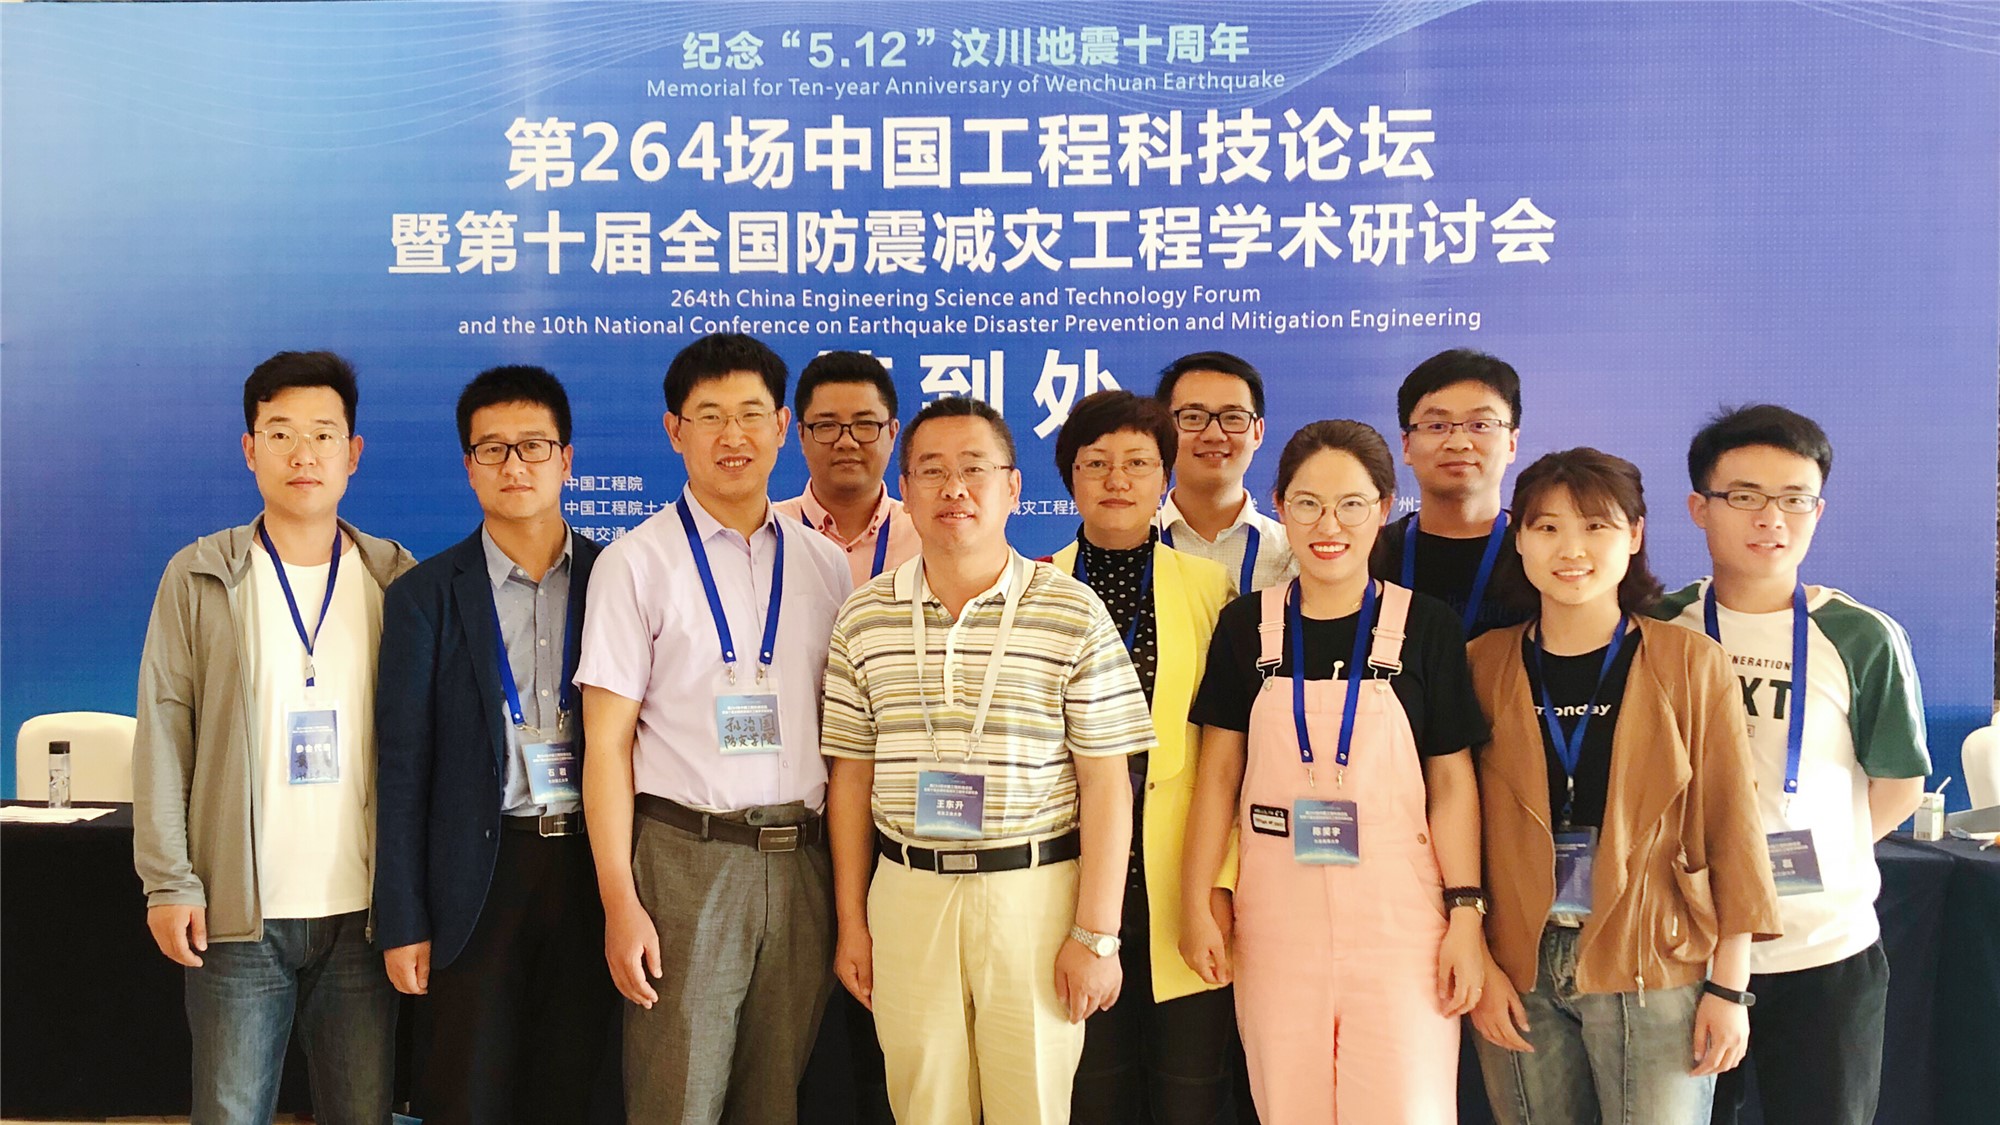 第264场中国工程科技论坛暨第十届全国防震减灾工程学术研讨会